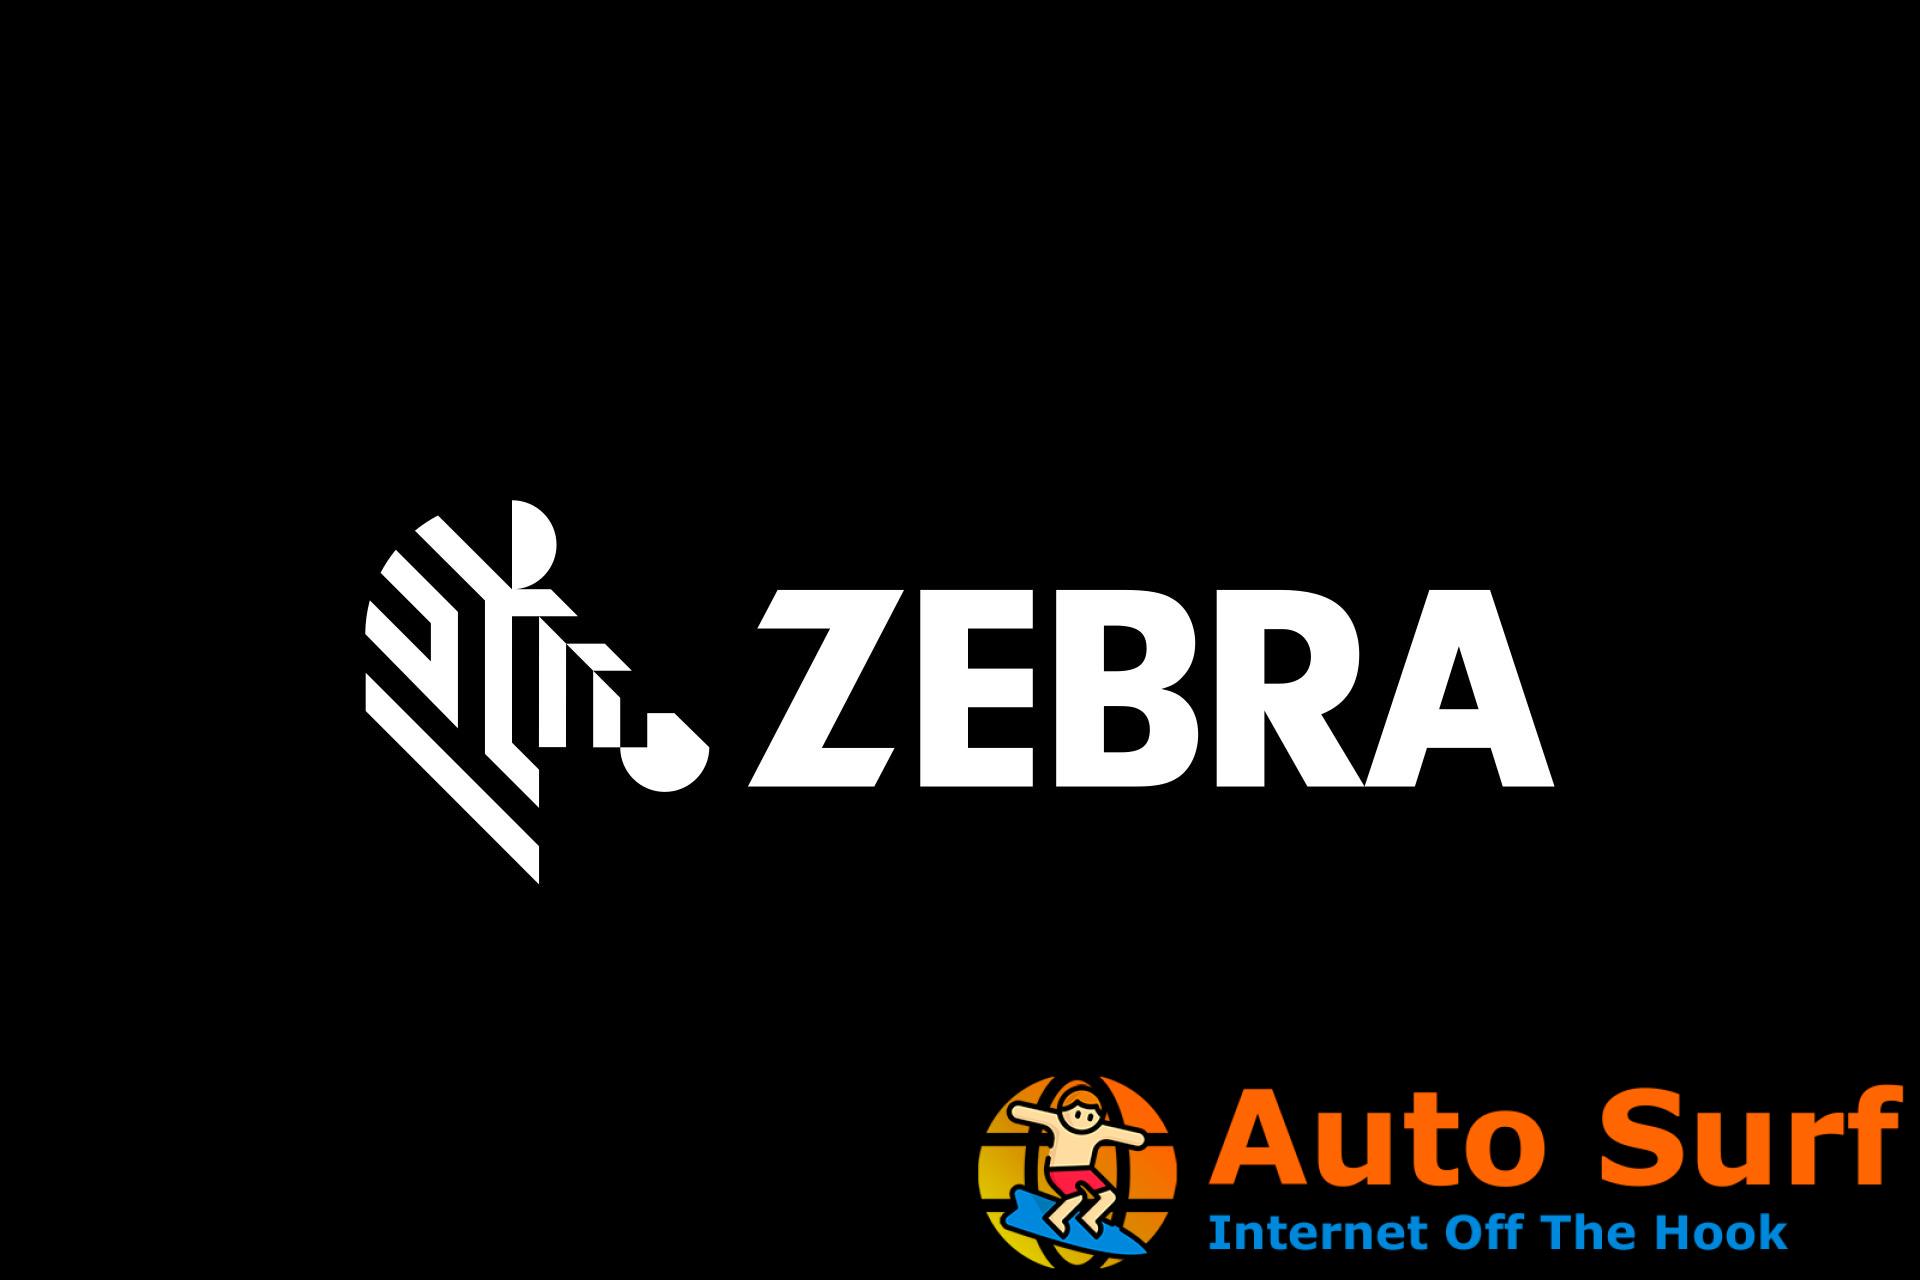 La impresora Zebra no imprime: guía eficaz y fácil de seguir